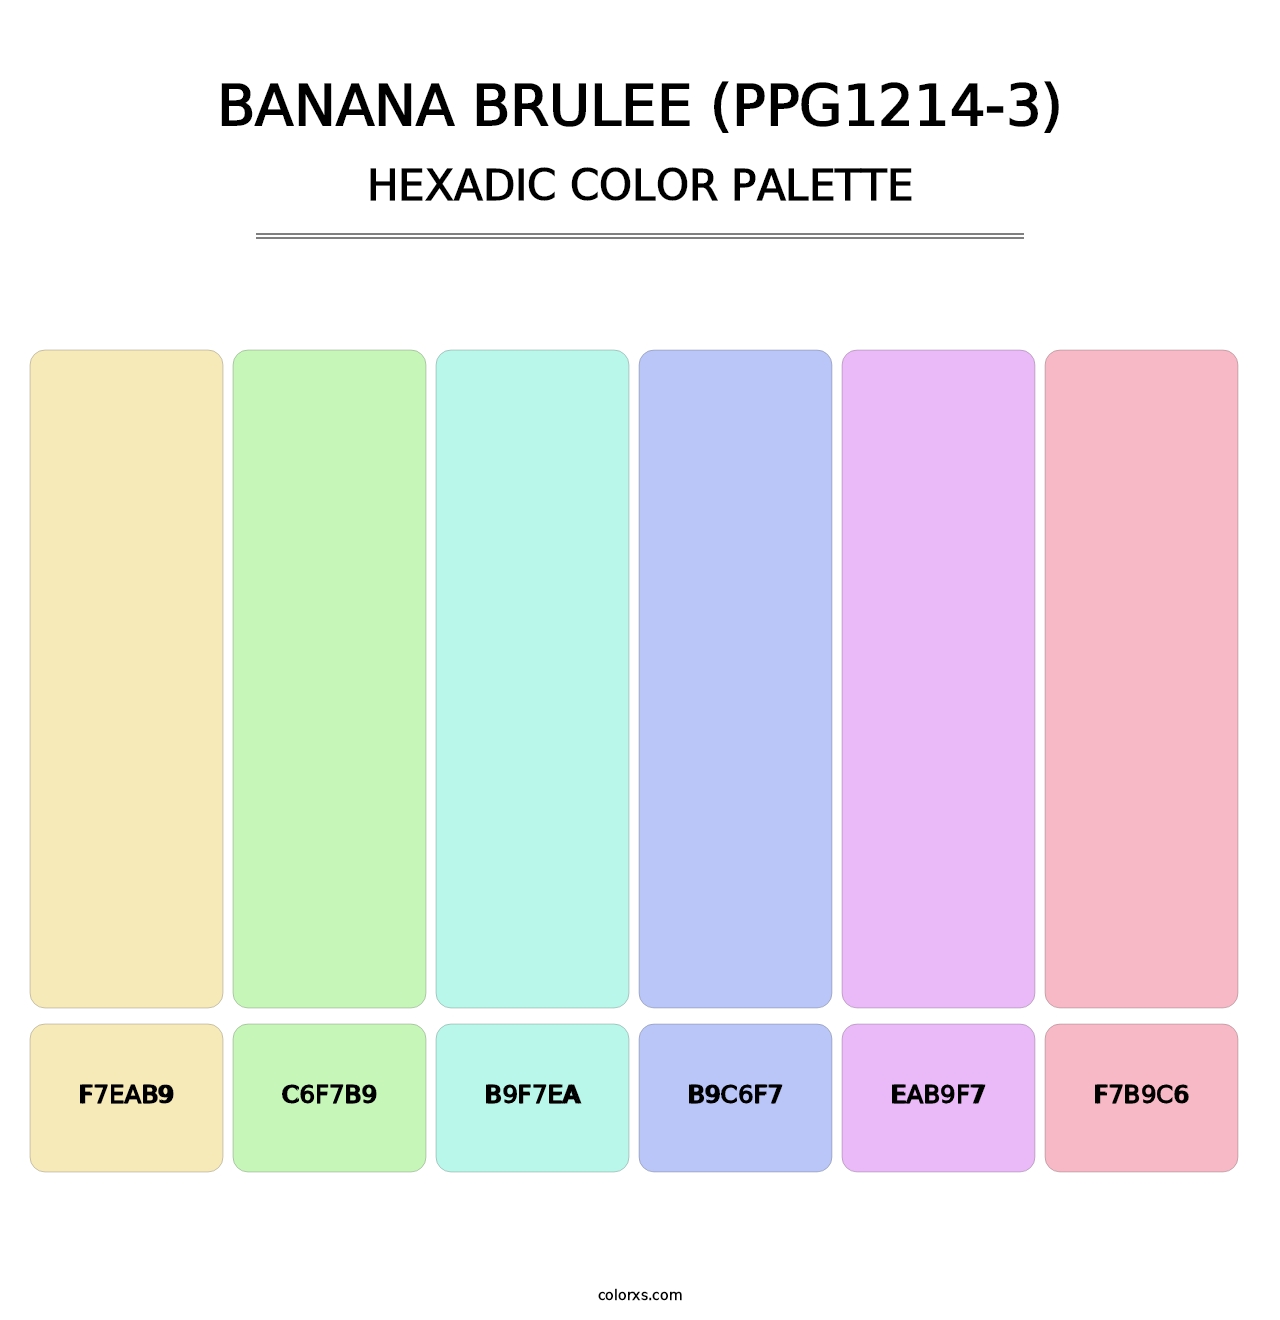 Banana Brulee (PPG1214-3) - Hexadic Color Palette